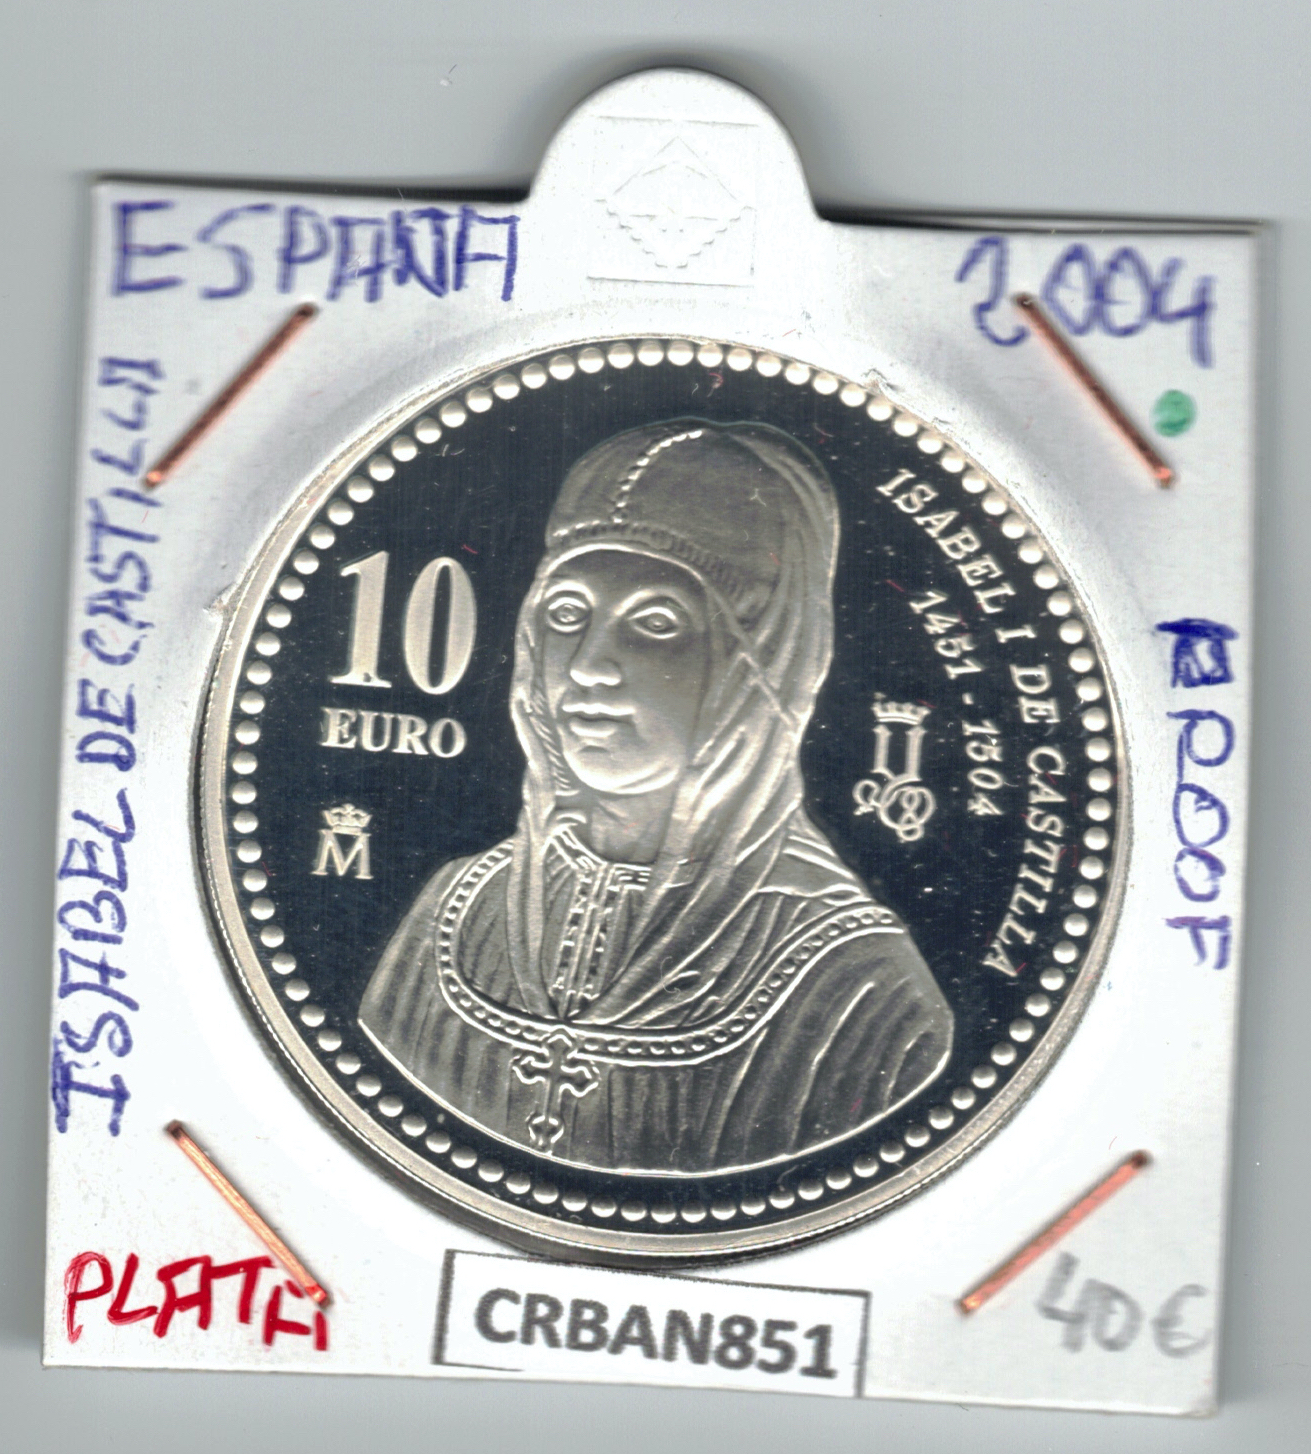 CRBAN851 MONEDA ESPAÑA 10 EURO ISABEL I DE CASTILLA PLATA PROOF 2004